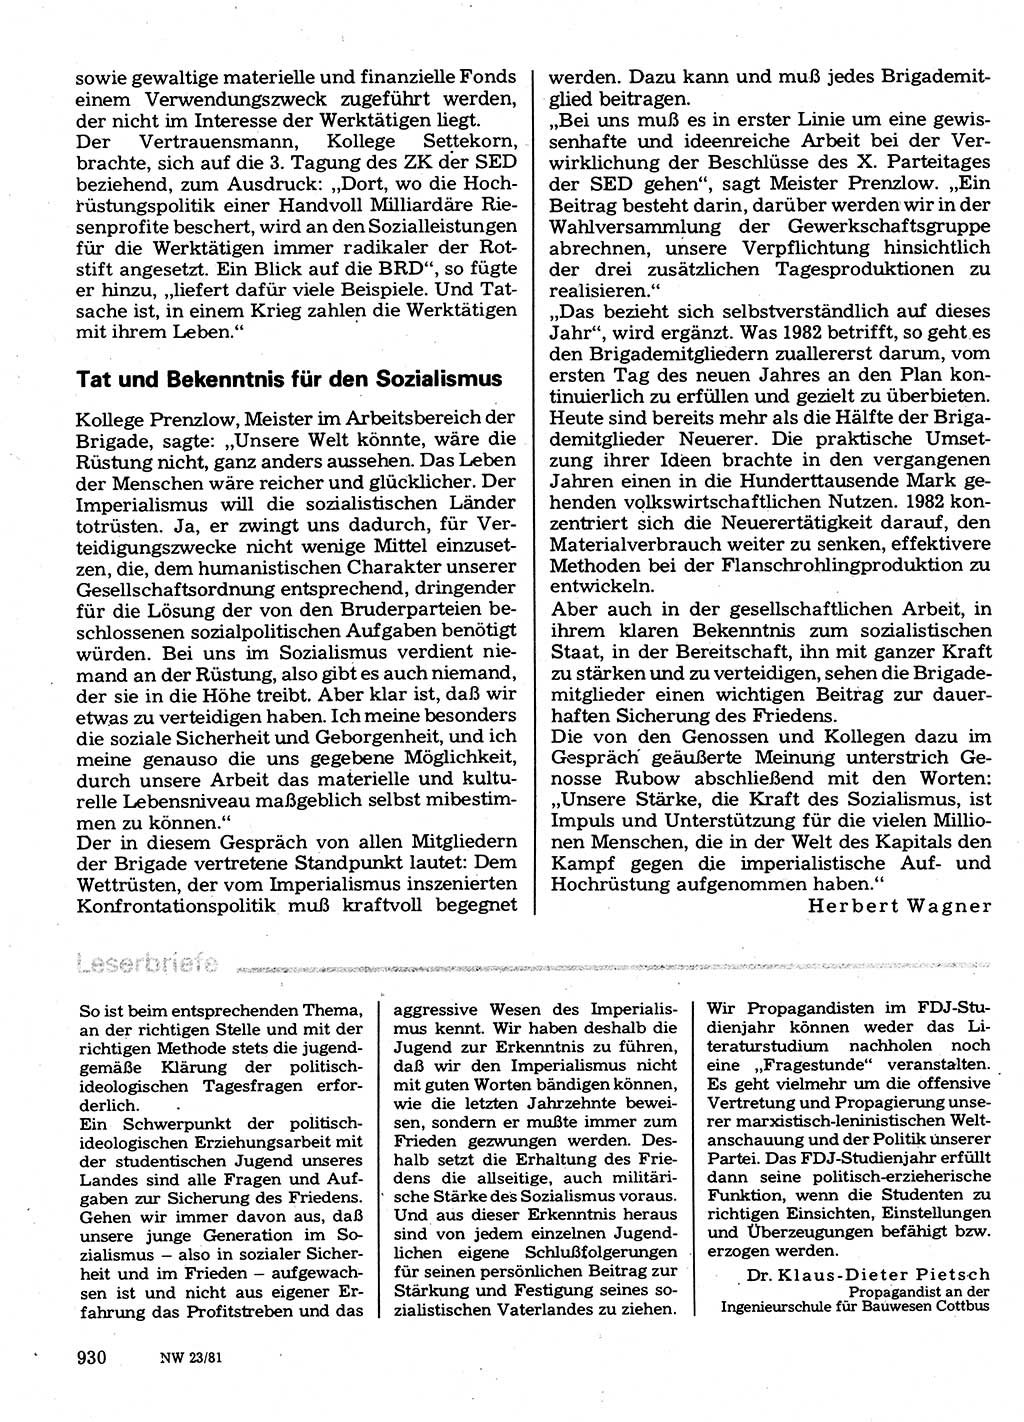 Neuer Weg (NW), Organ des Zentralkomitees (ZK) der SED (Sozialistische Einheitspartei Deutschlands) für Fragen des Parteilebens, 36. Jahrgang [Deutsche Demokratische Republik (DDR)] 1981, Seite 930 (NW ZK SED DDR 1981, S. 930)